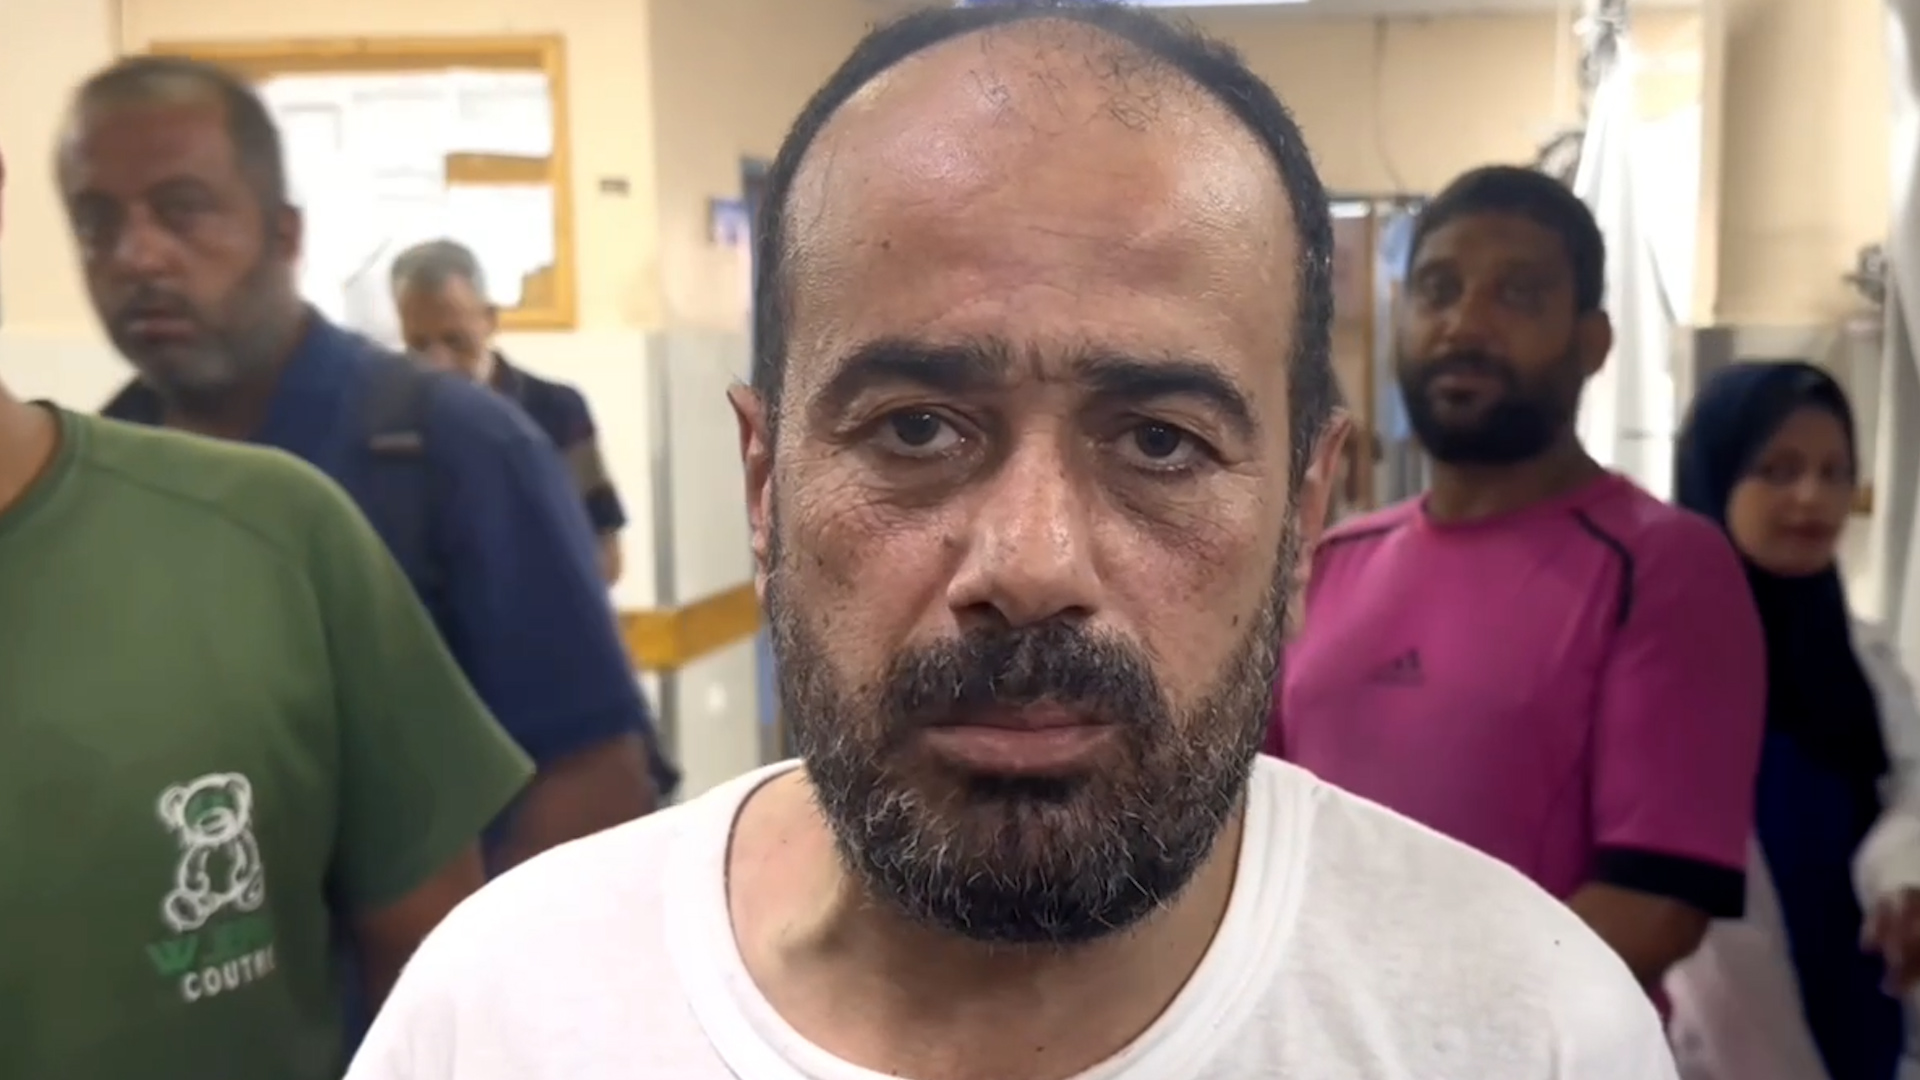 مدير مستشفى الشفاء الذي احتجزته إسرائيل وتعرض للضرب لشهور أصبح حرا الآن | غزة